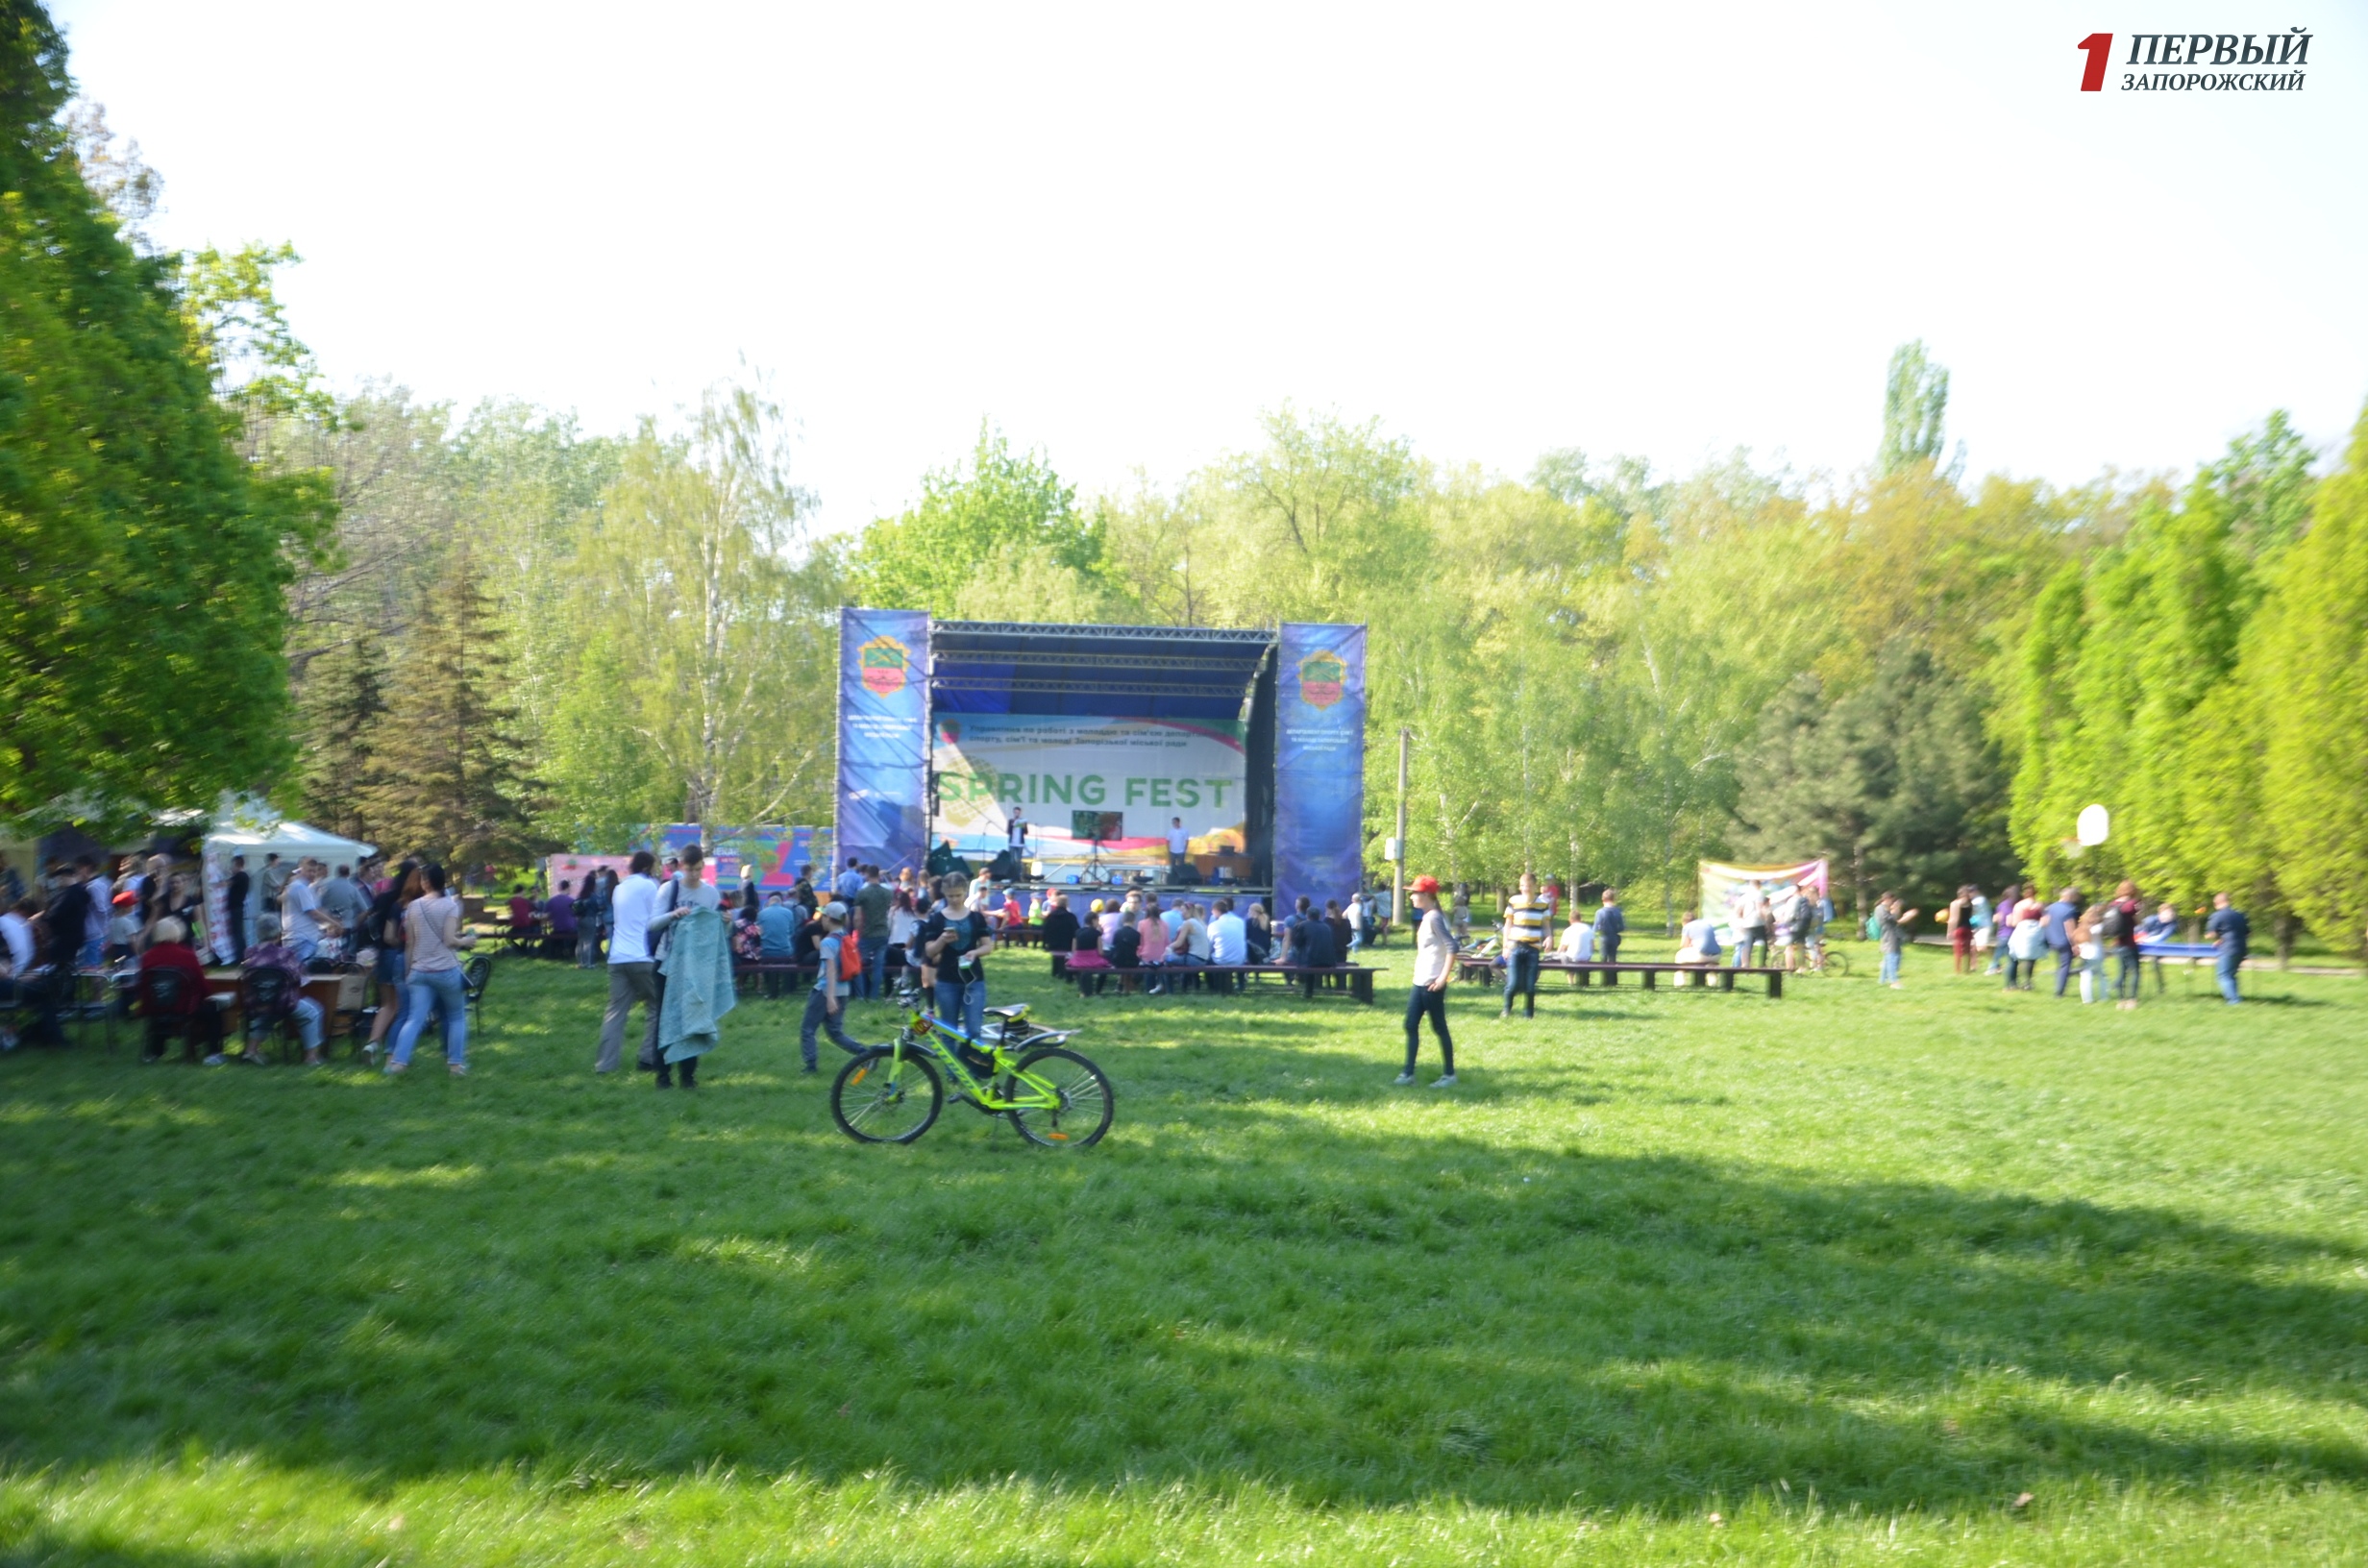 Кибербитва и многочисленные соревнования: как запорожцы провели игровой день фестиваля «Spring fest» - ФОТО